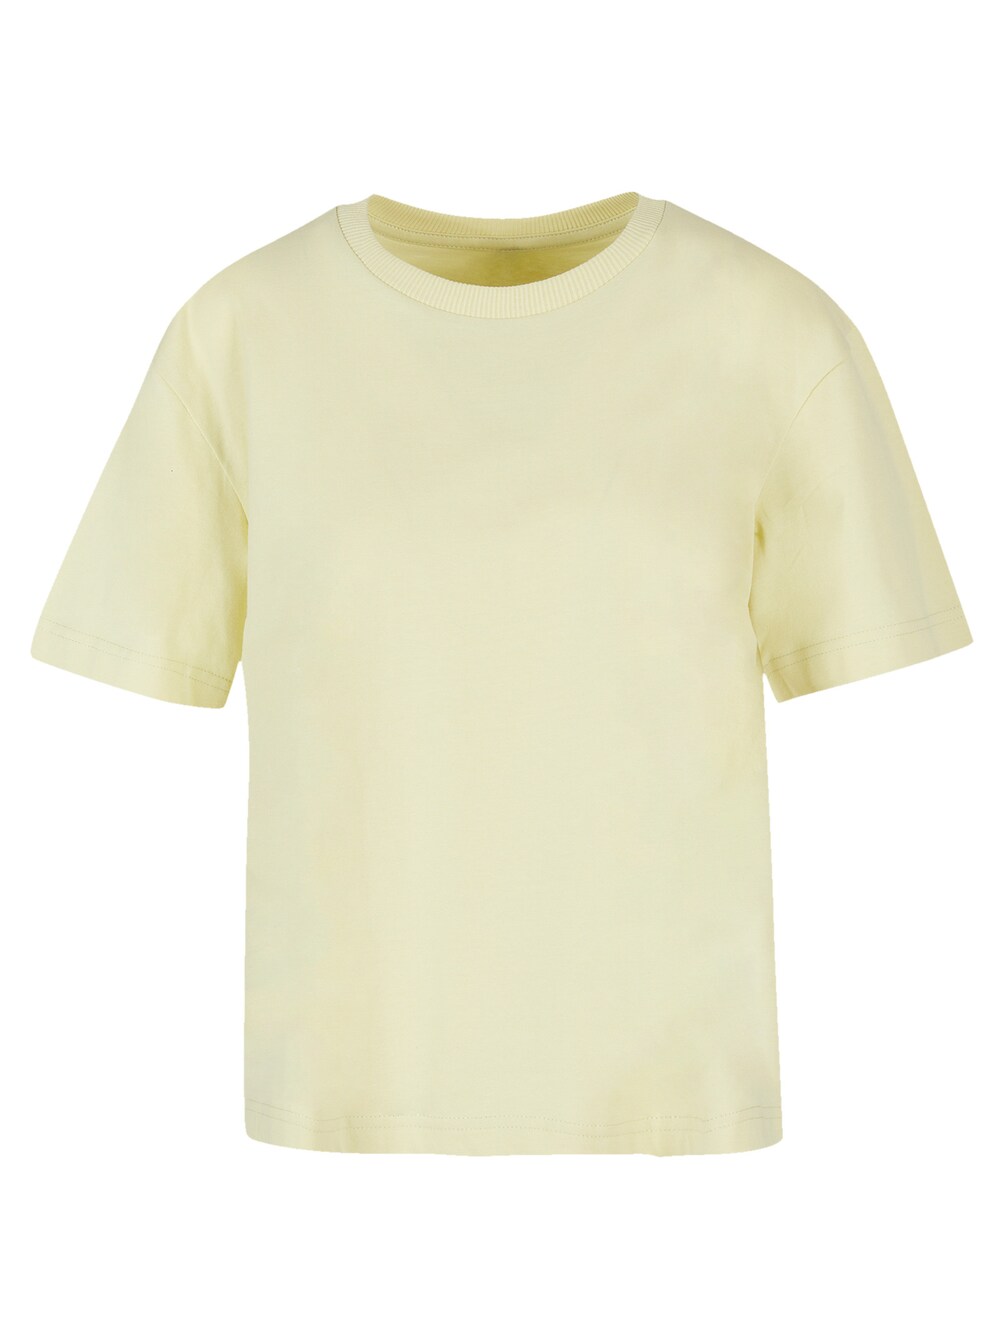 Рубашка F4Nt4Stic, желтый/пастельно-желтый